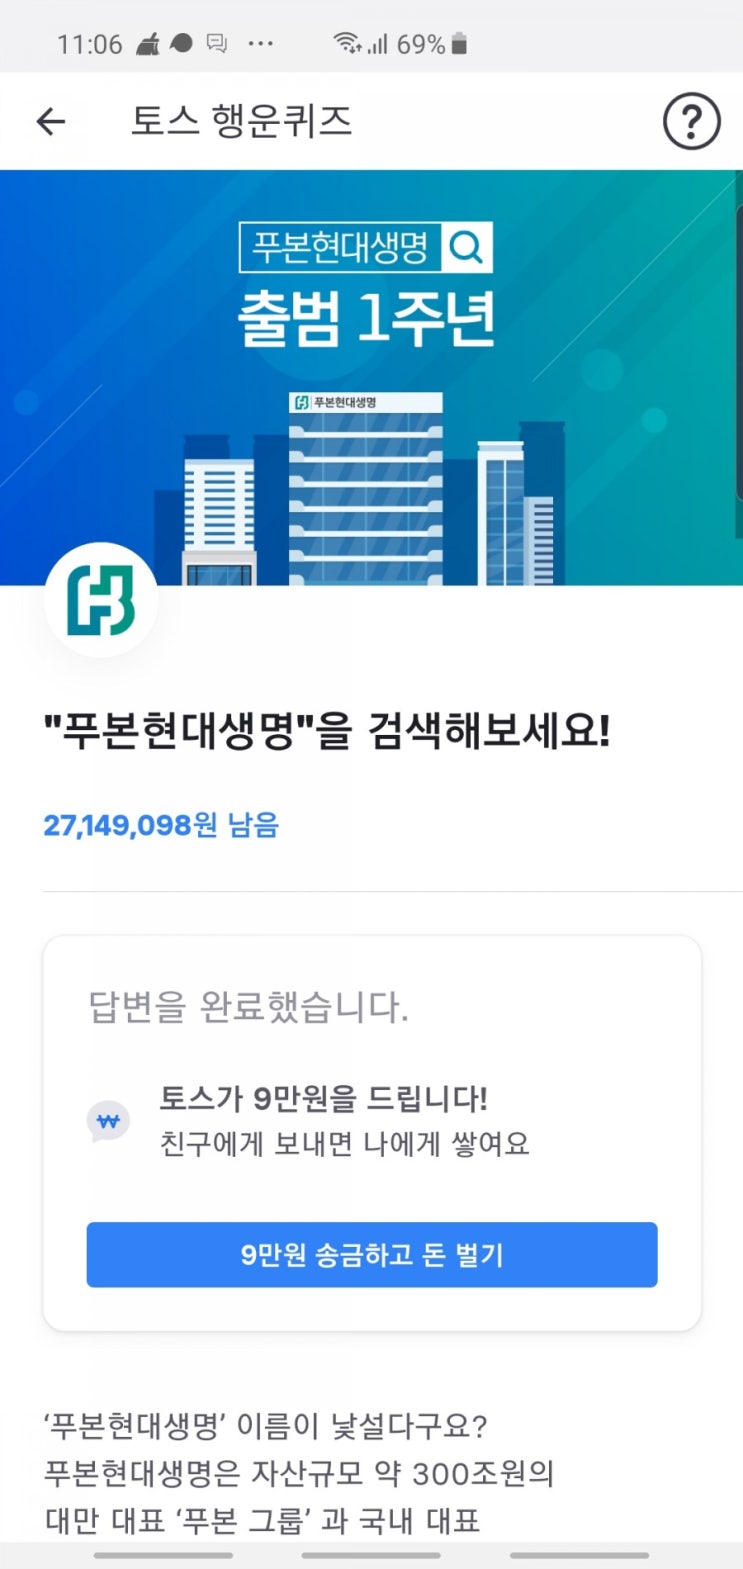 푸본현대생명 토스행운퀴즈 정답 공개